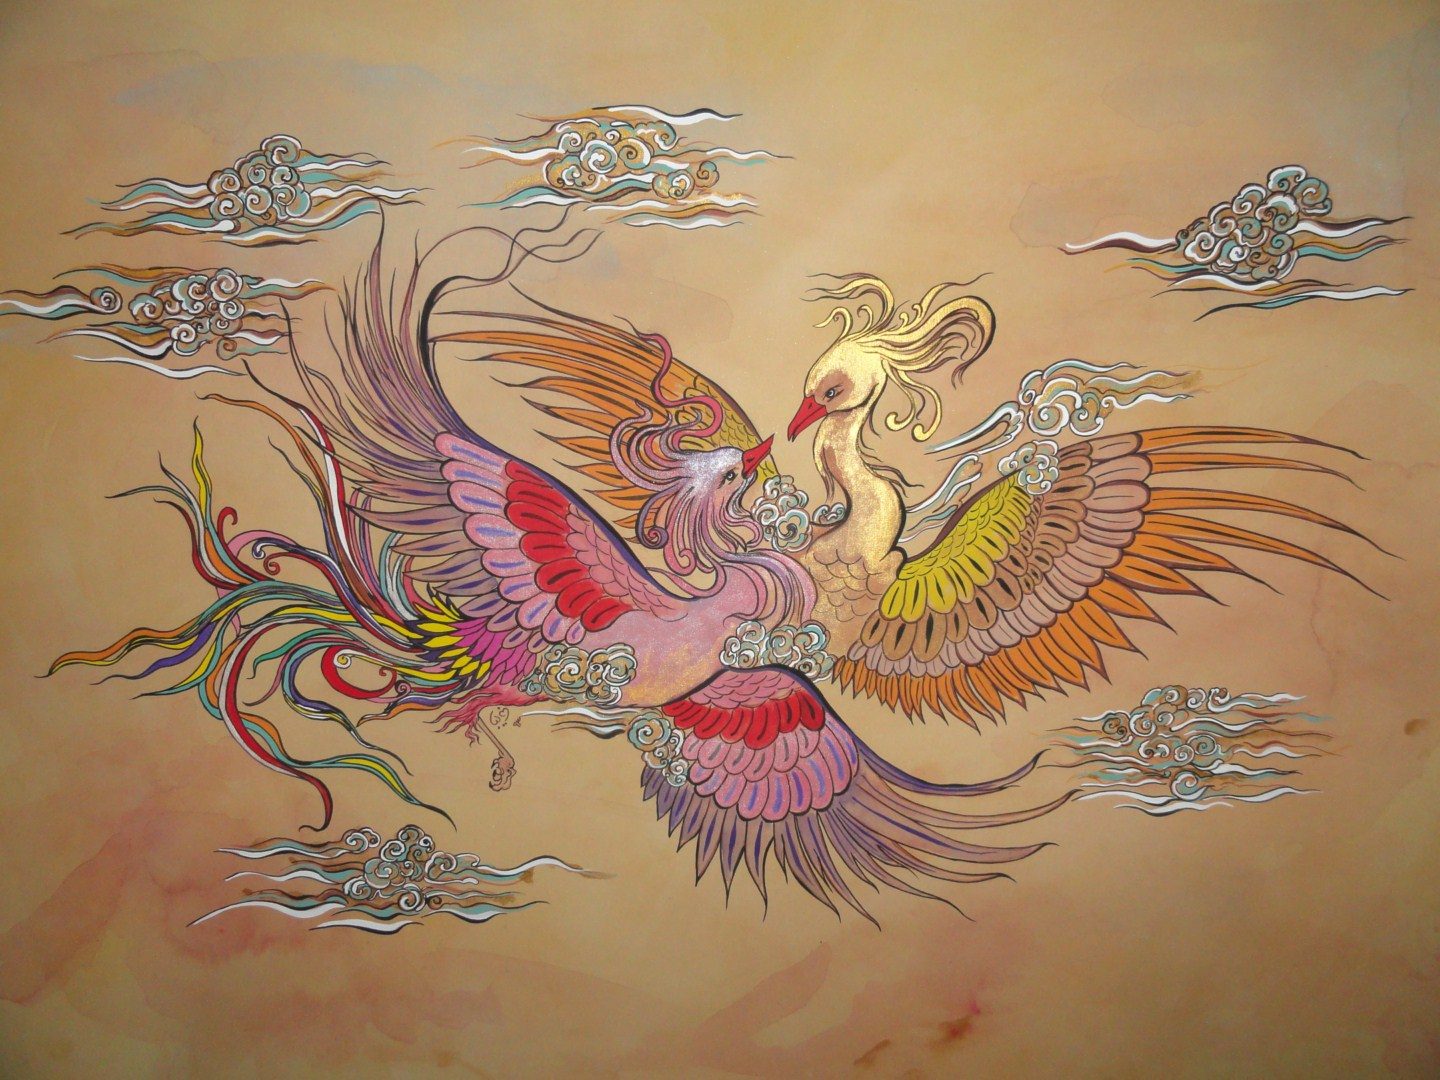 سیمرغ | پرنده ای اساطیری از دل افسانه های ایران باستان